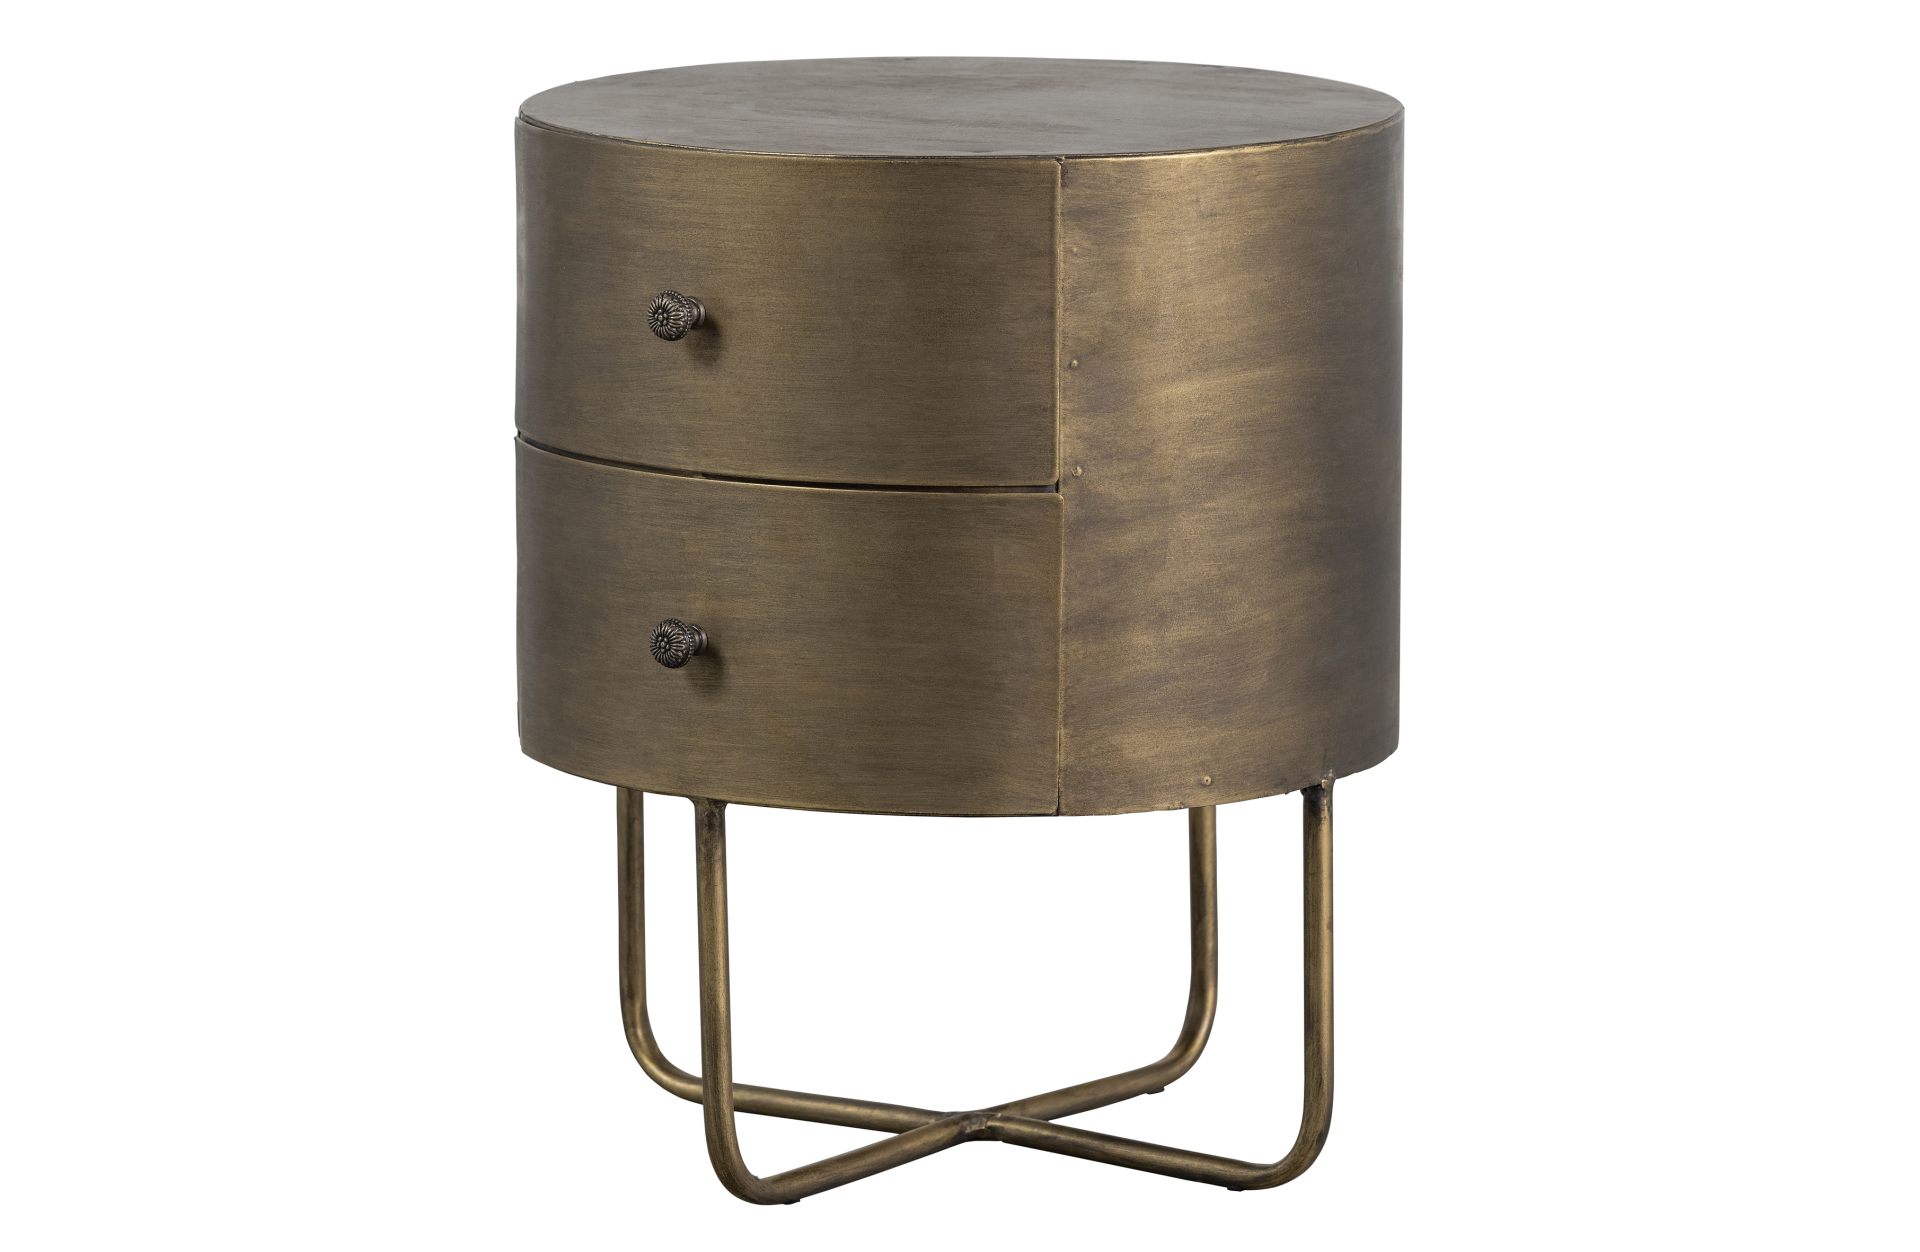 Der Nachttisch Glossy besitzt eine runde Form. Gefertigt wurde der Tisch aus Metall und hat einen goldenen Farbton.